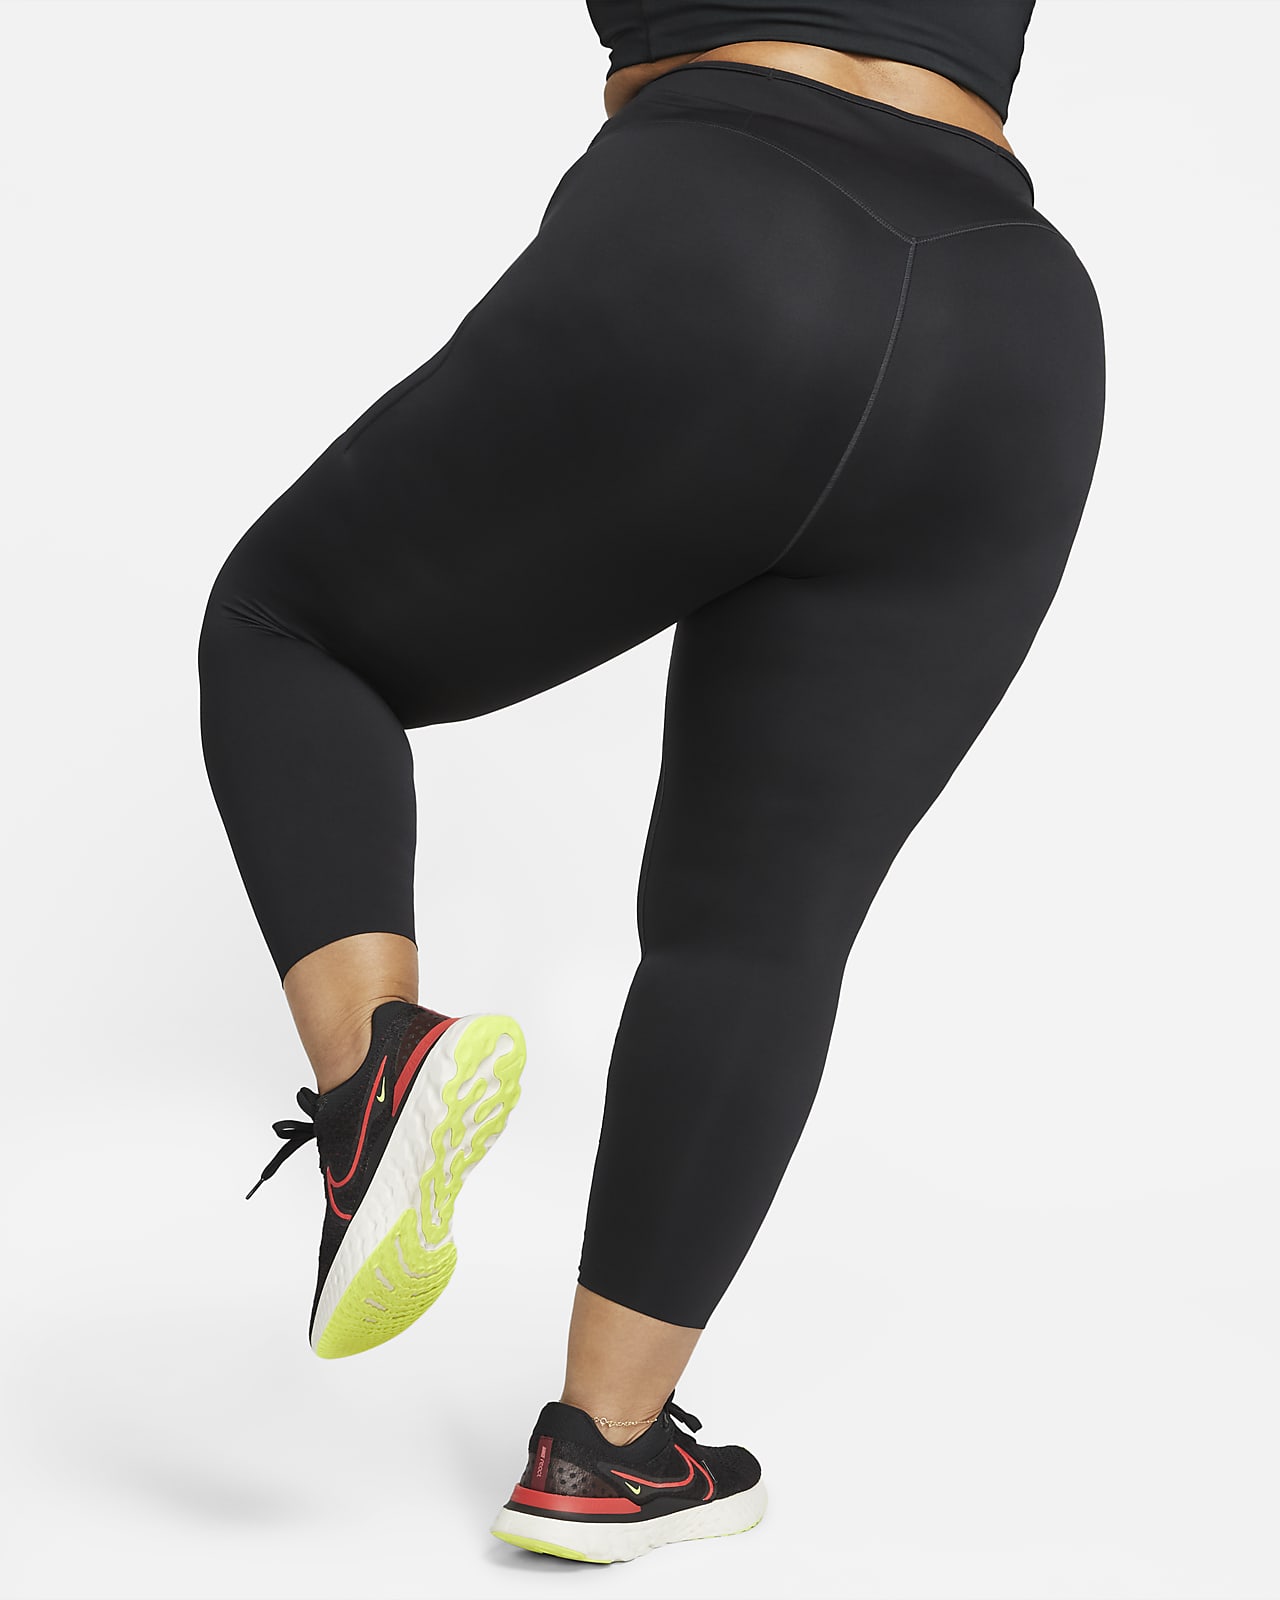 Nike Plus Air high rise leggings in black